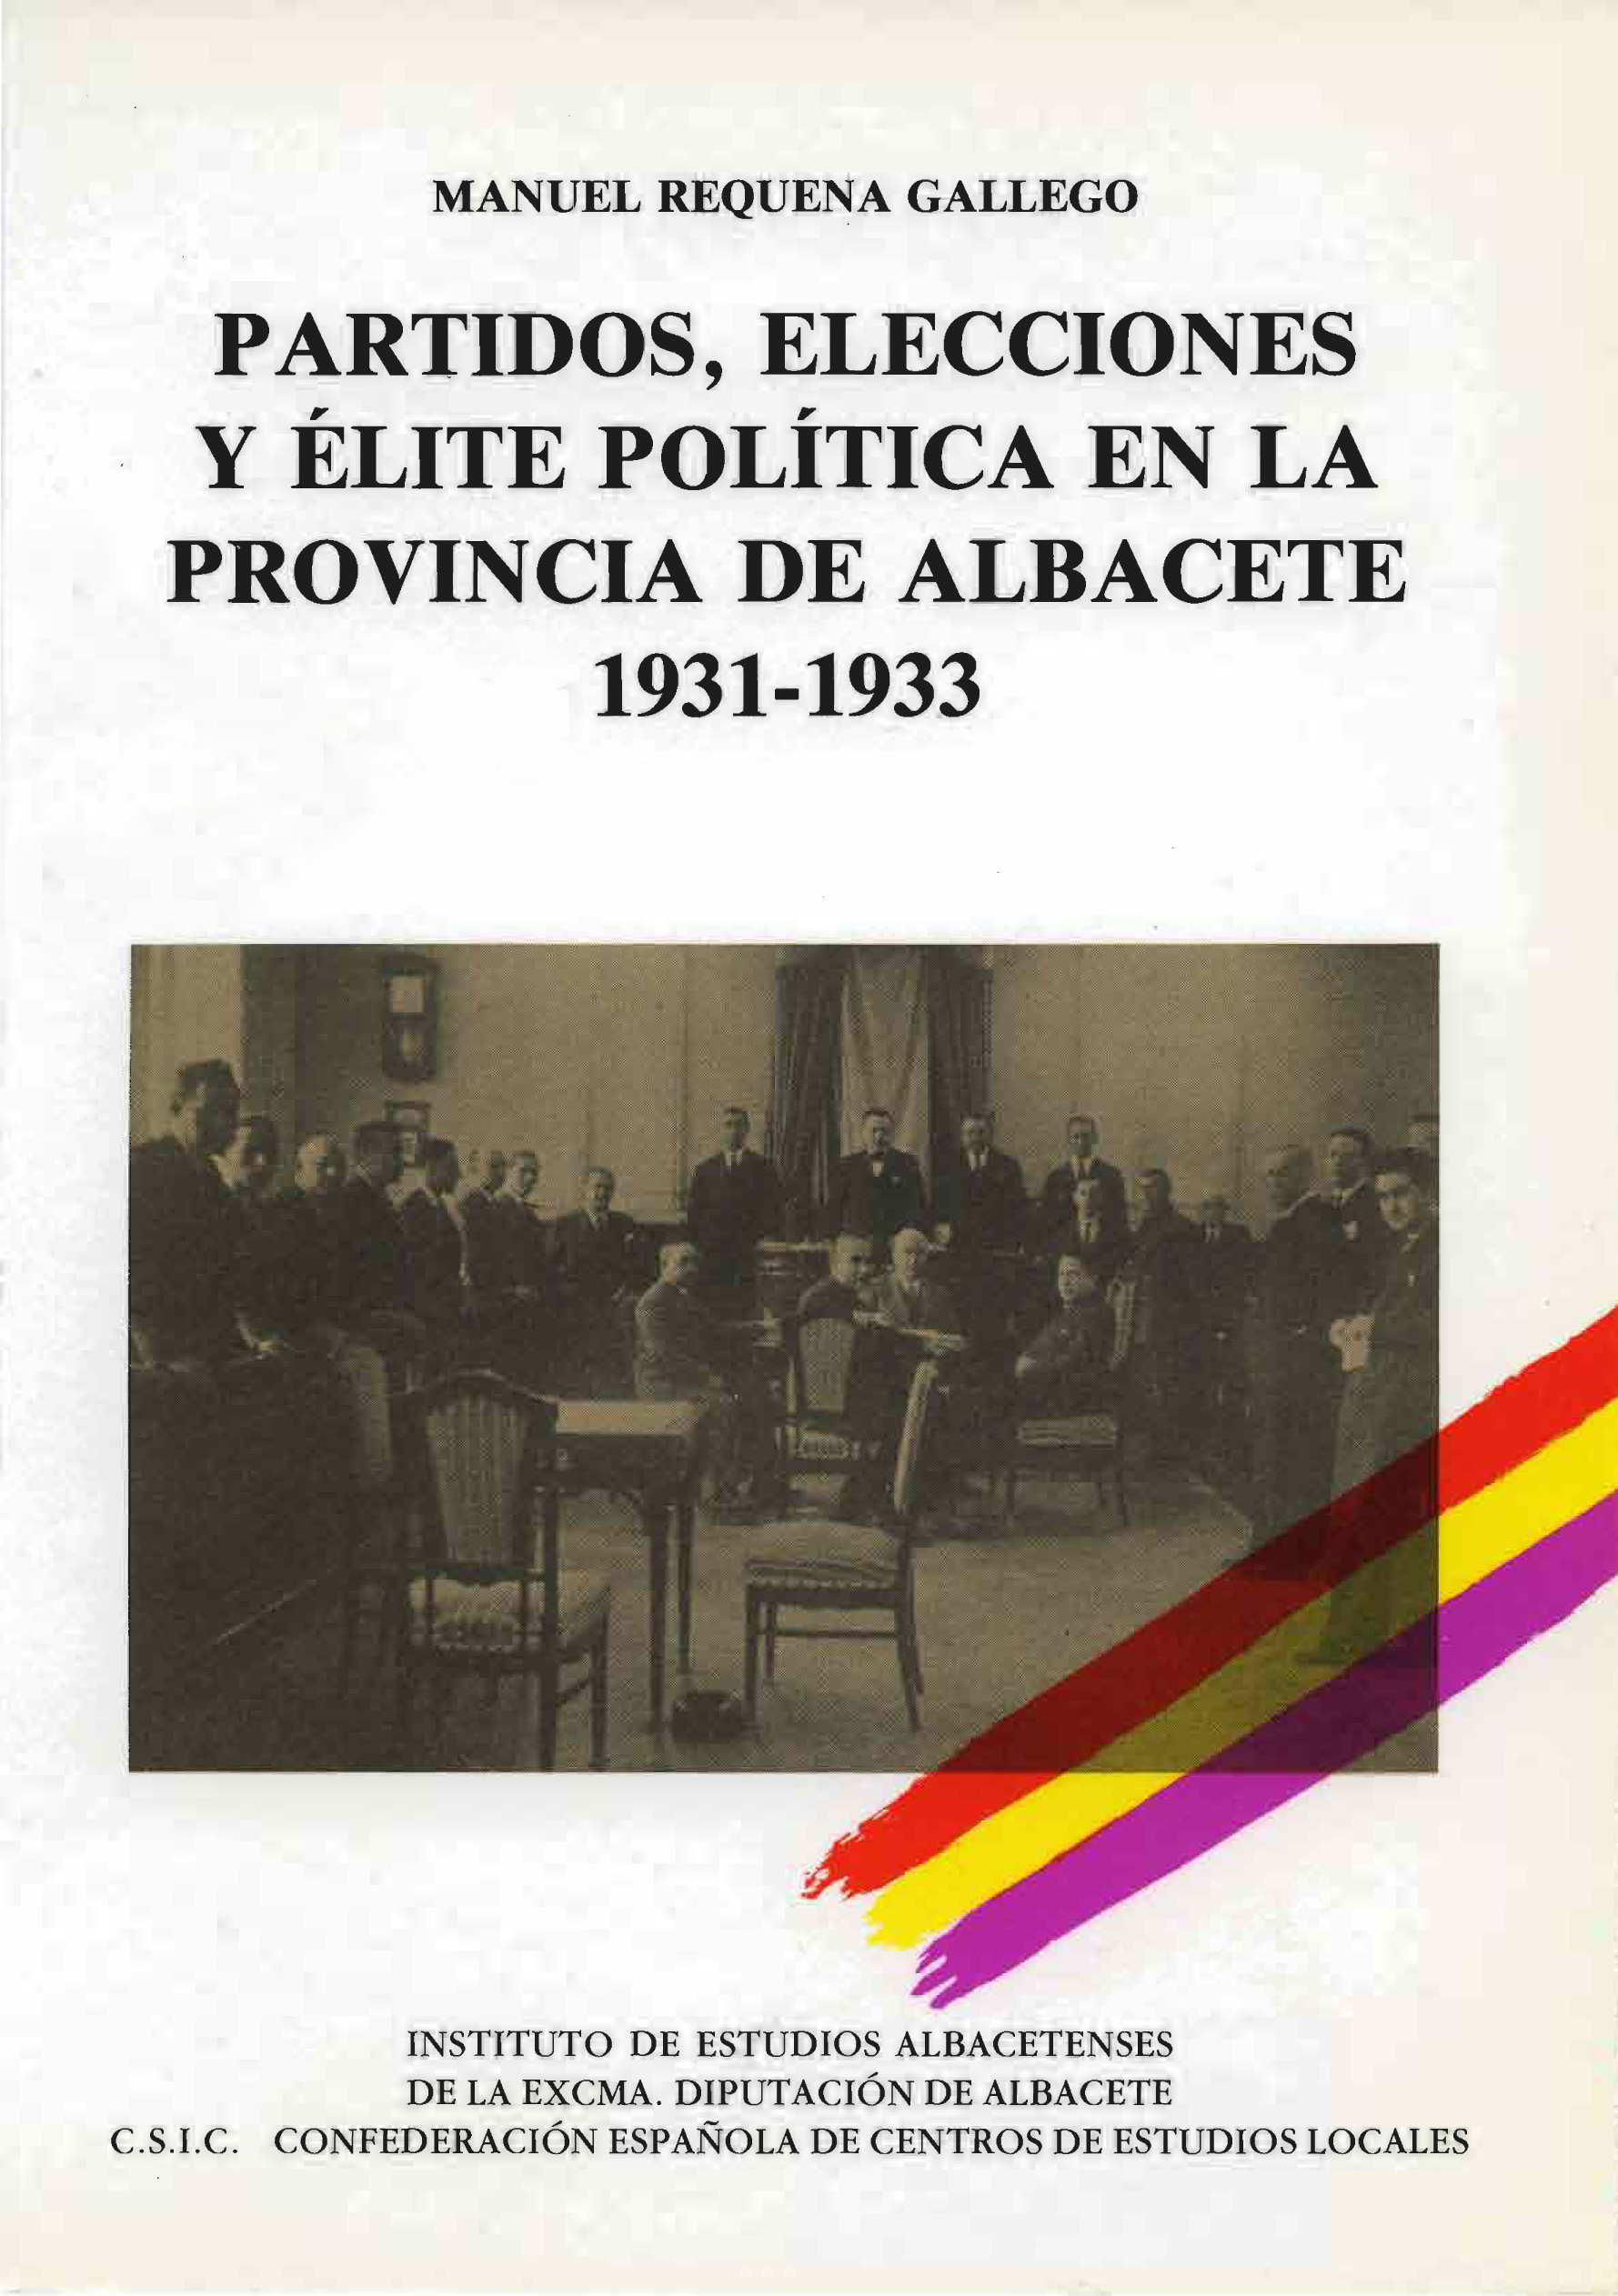 Imagen de portada del libro Partidos, elecciones y élite política en la provincia de Albacete, 1931-1933